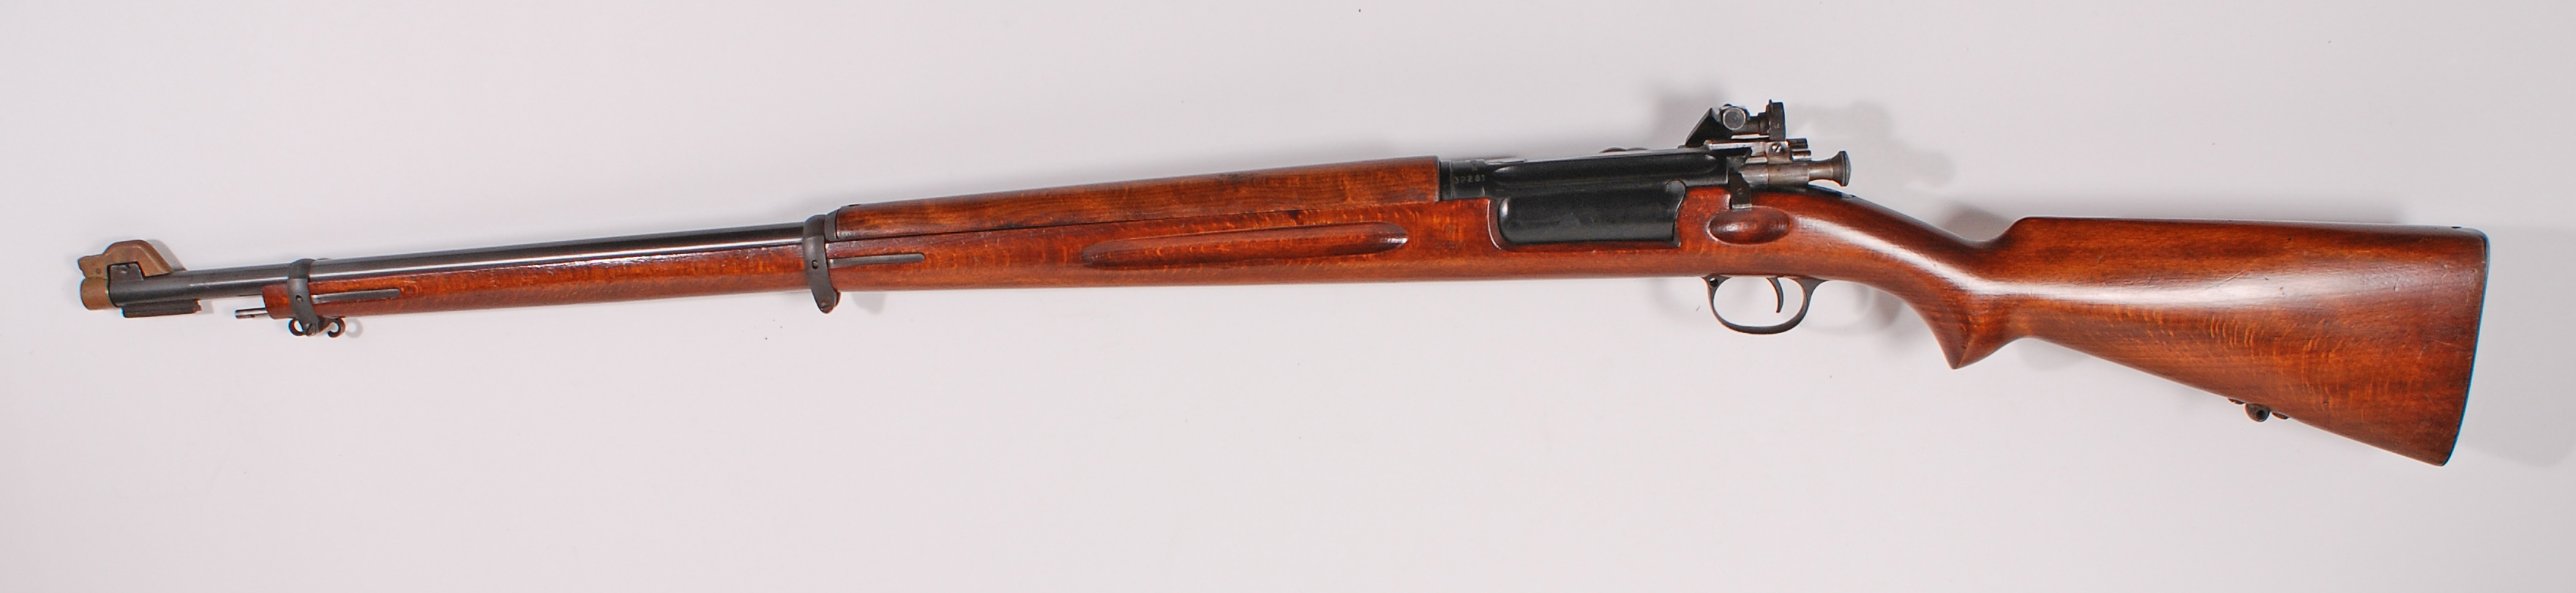 ./guns/rifle/bilder/Rifle-Kongsberg-Krag-M1894-1936 privat-39281-2.jpg